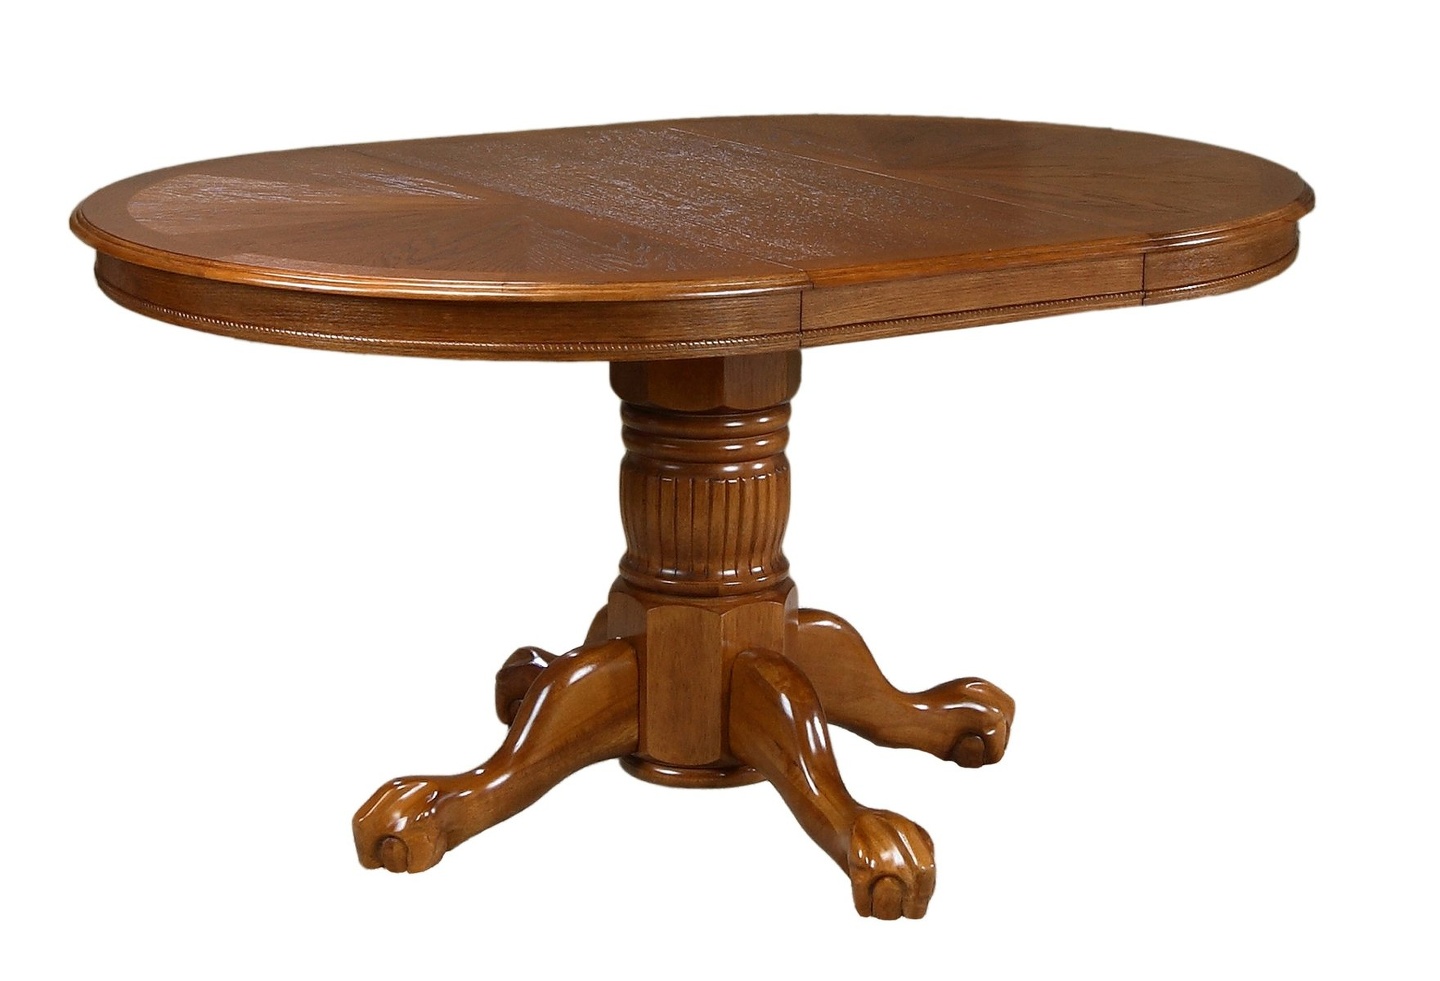 деревянный обеденный стол из массива